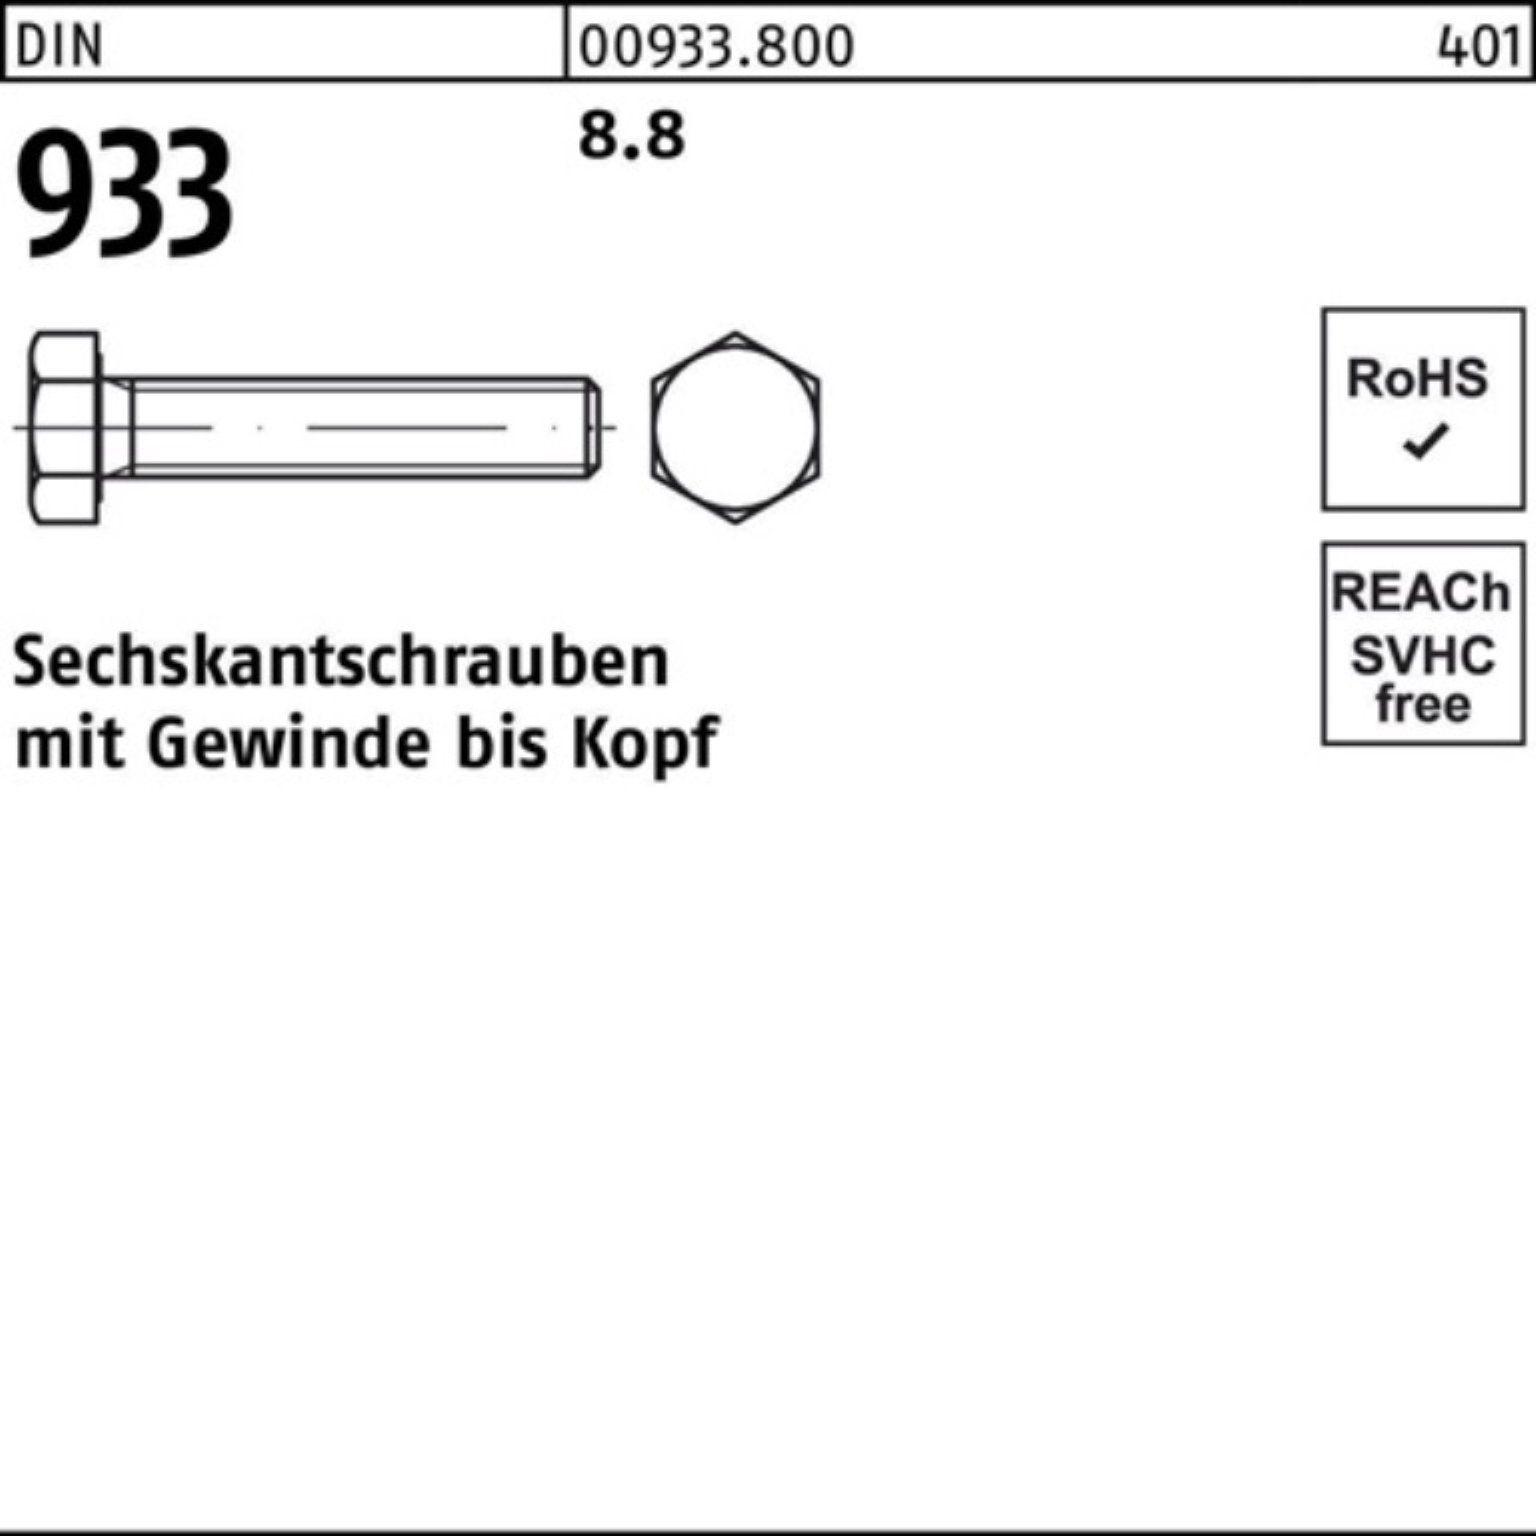 Reyher Sechskantschraube 100er Pack 300 VG 1 Sechskantschraube 933 8.8 M16x DIN DIN Stück 933